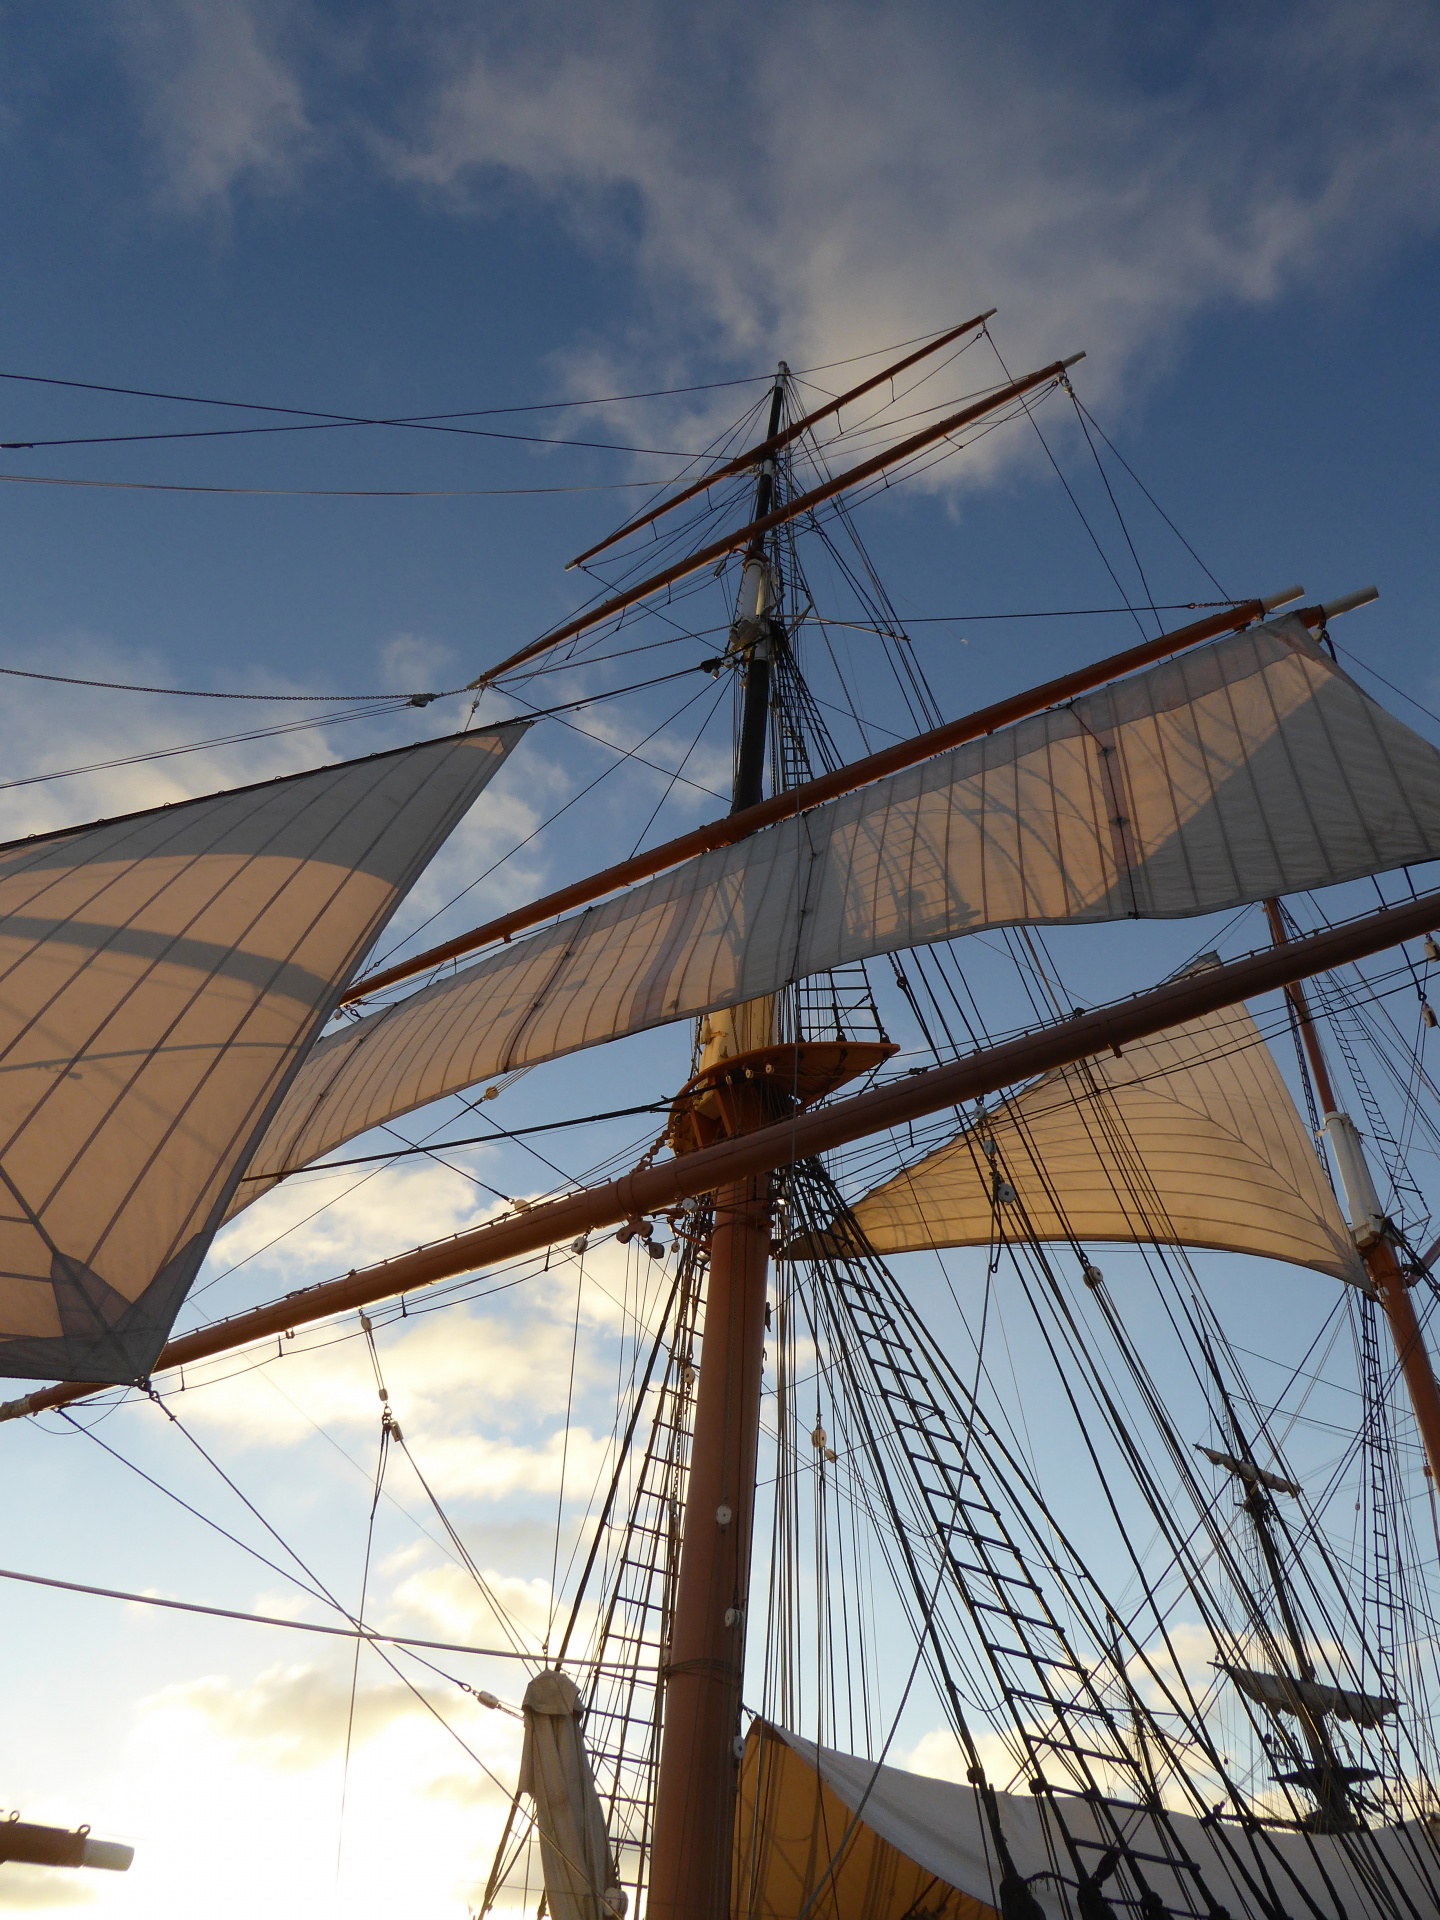 Masts of old sailing ship